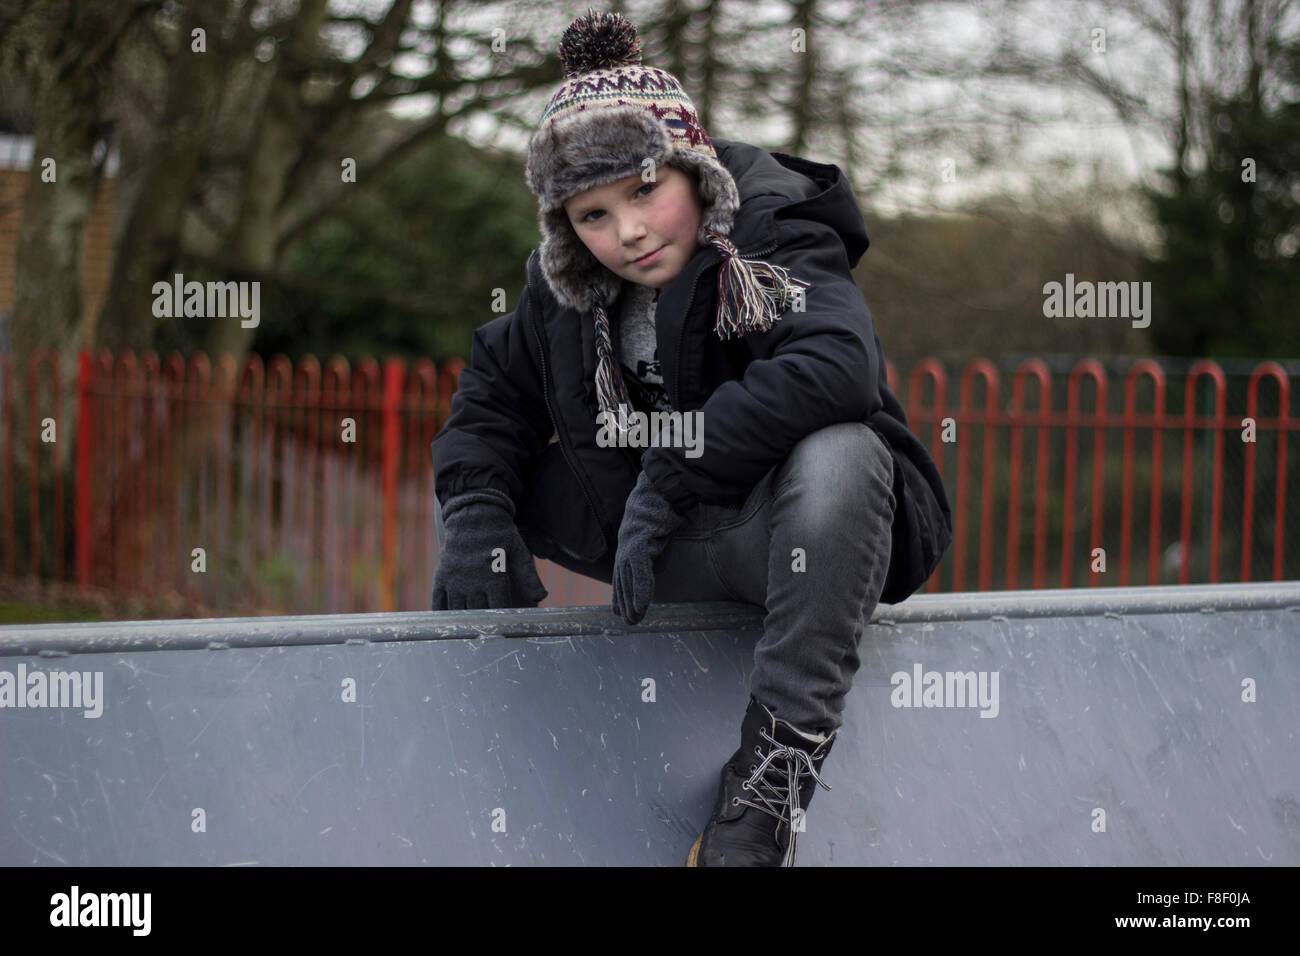 Royaume-uni, Pays de Galles ; 8 décembre 2015. Jeune garçon pose pour l'adapter à la mode des étudiants. Banque D'Images